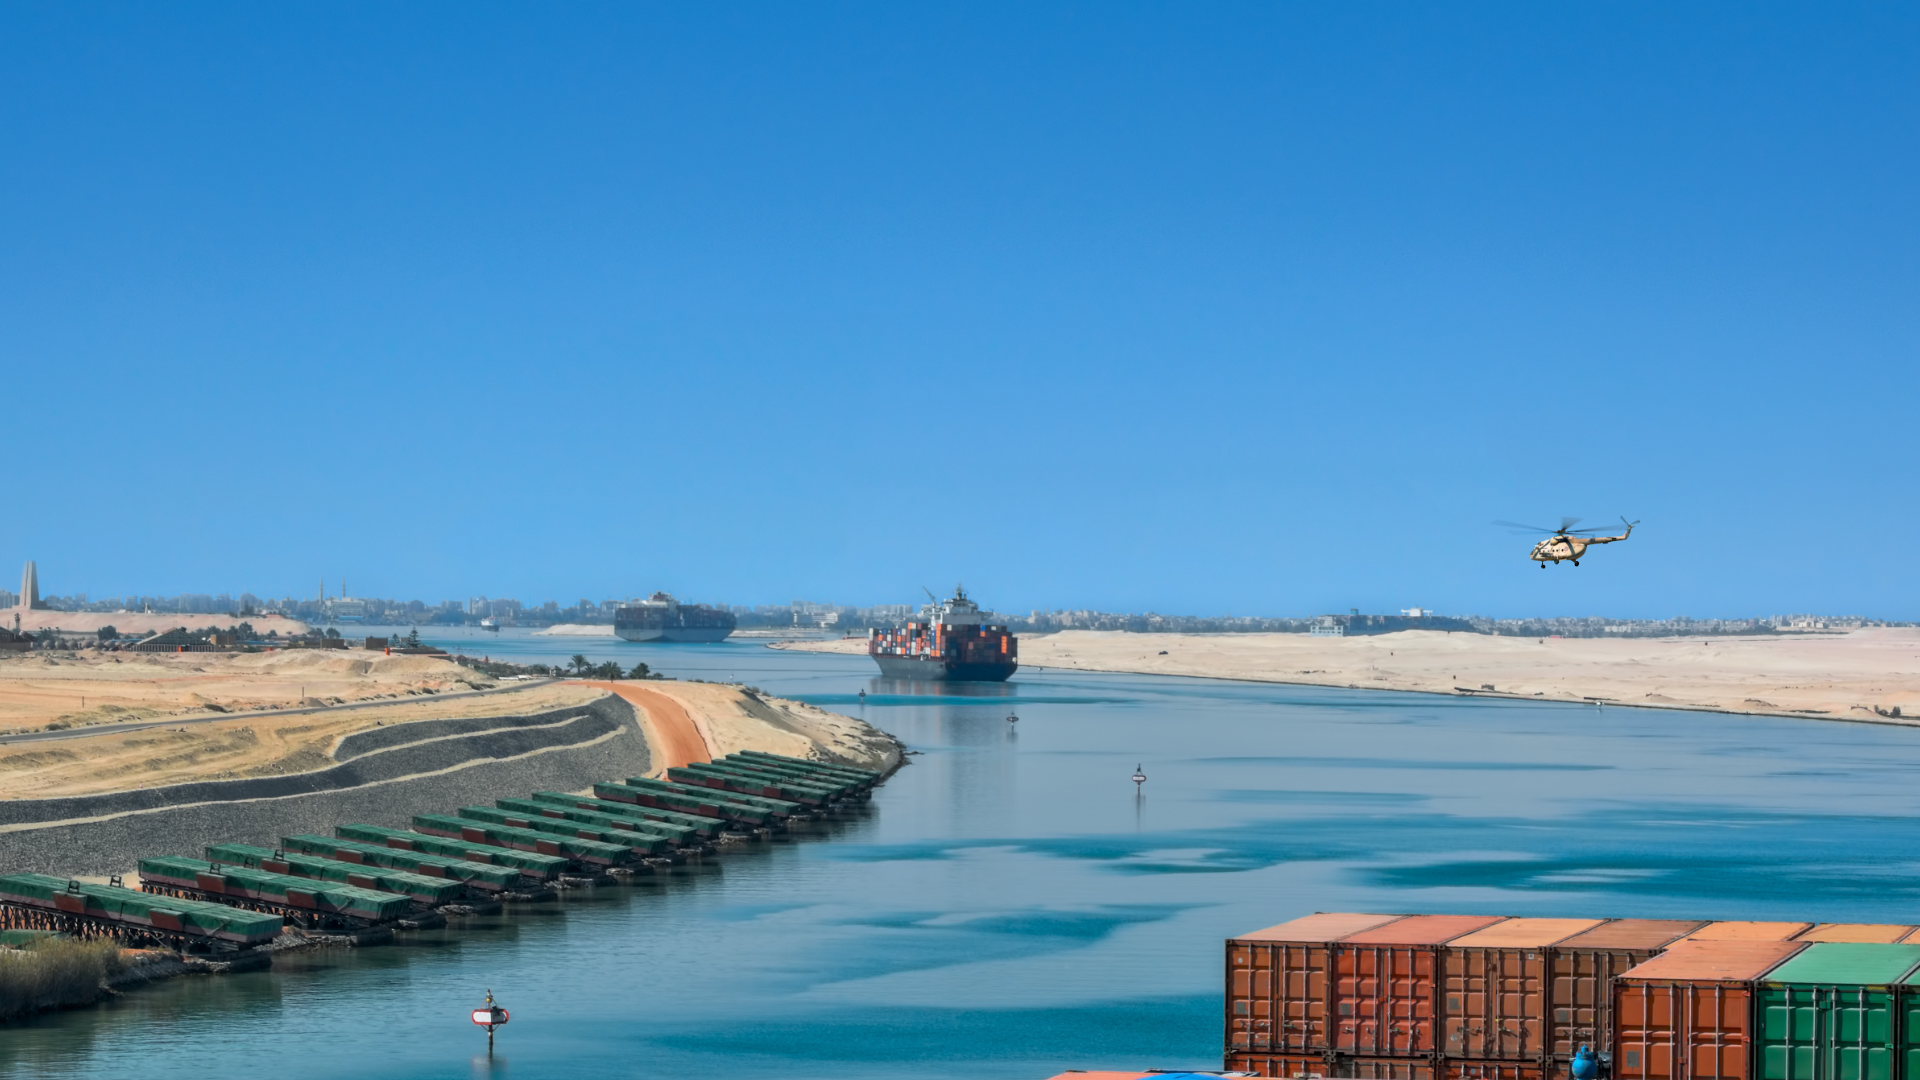 Situation actuelle dans le canal de Suez : Influence sur la chaîne d'approvisionnement en aluminium de la Chine vers l'Europe